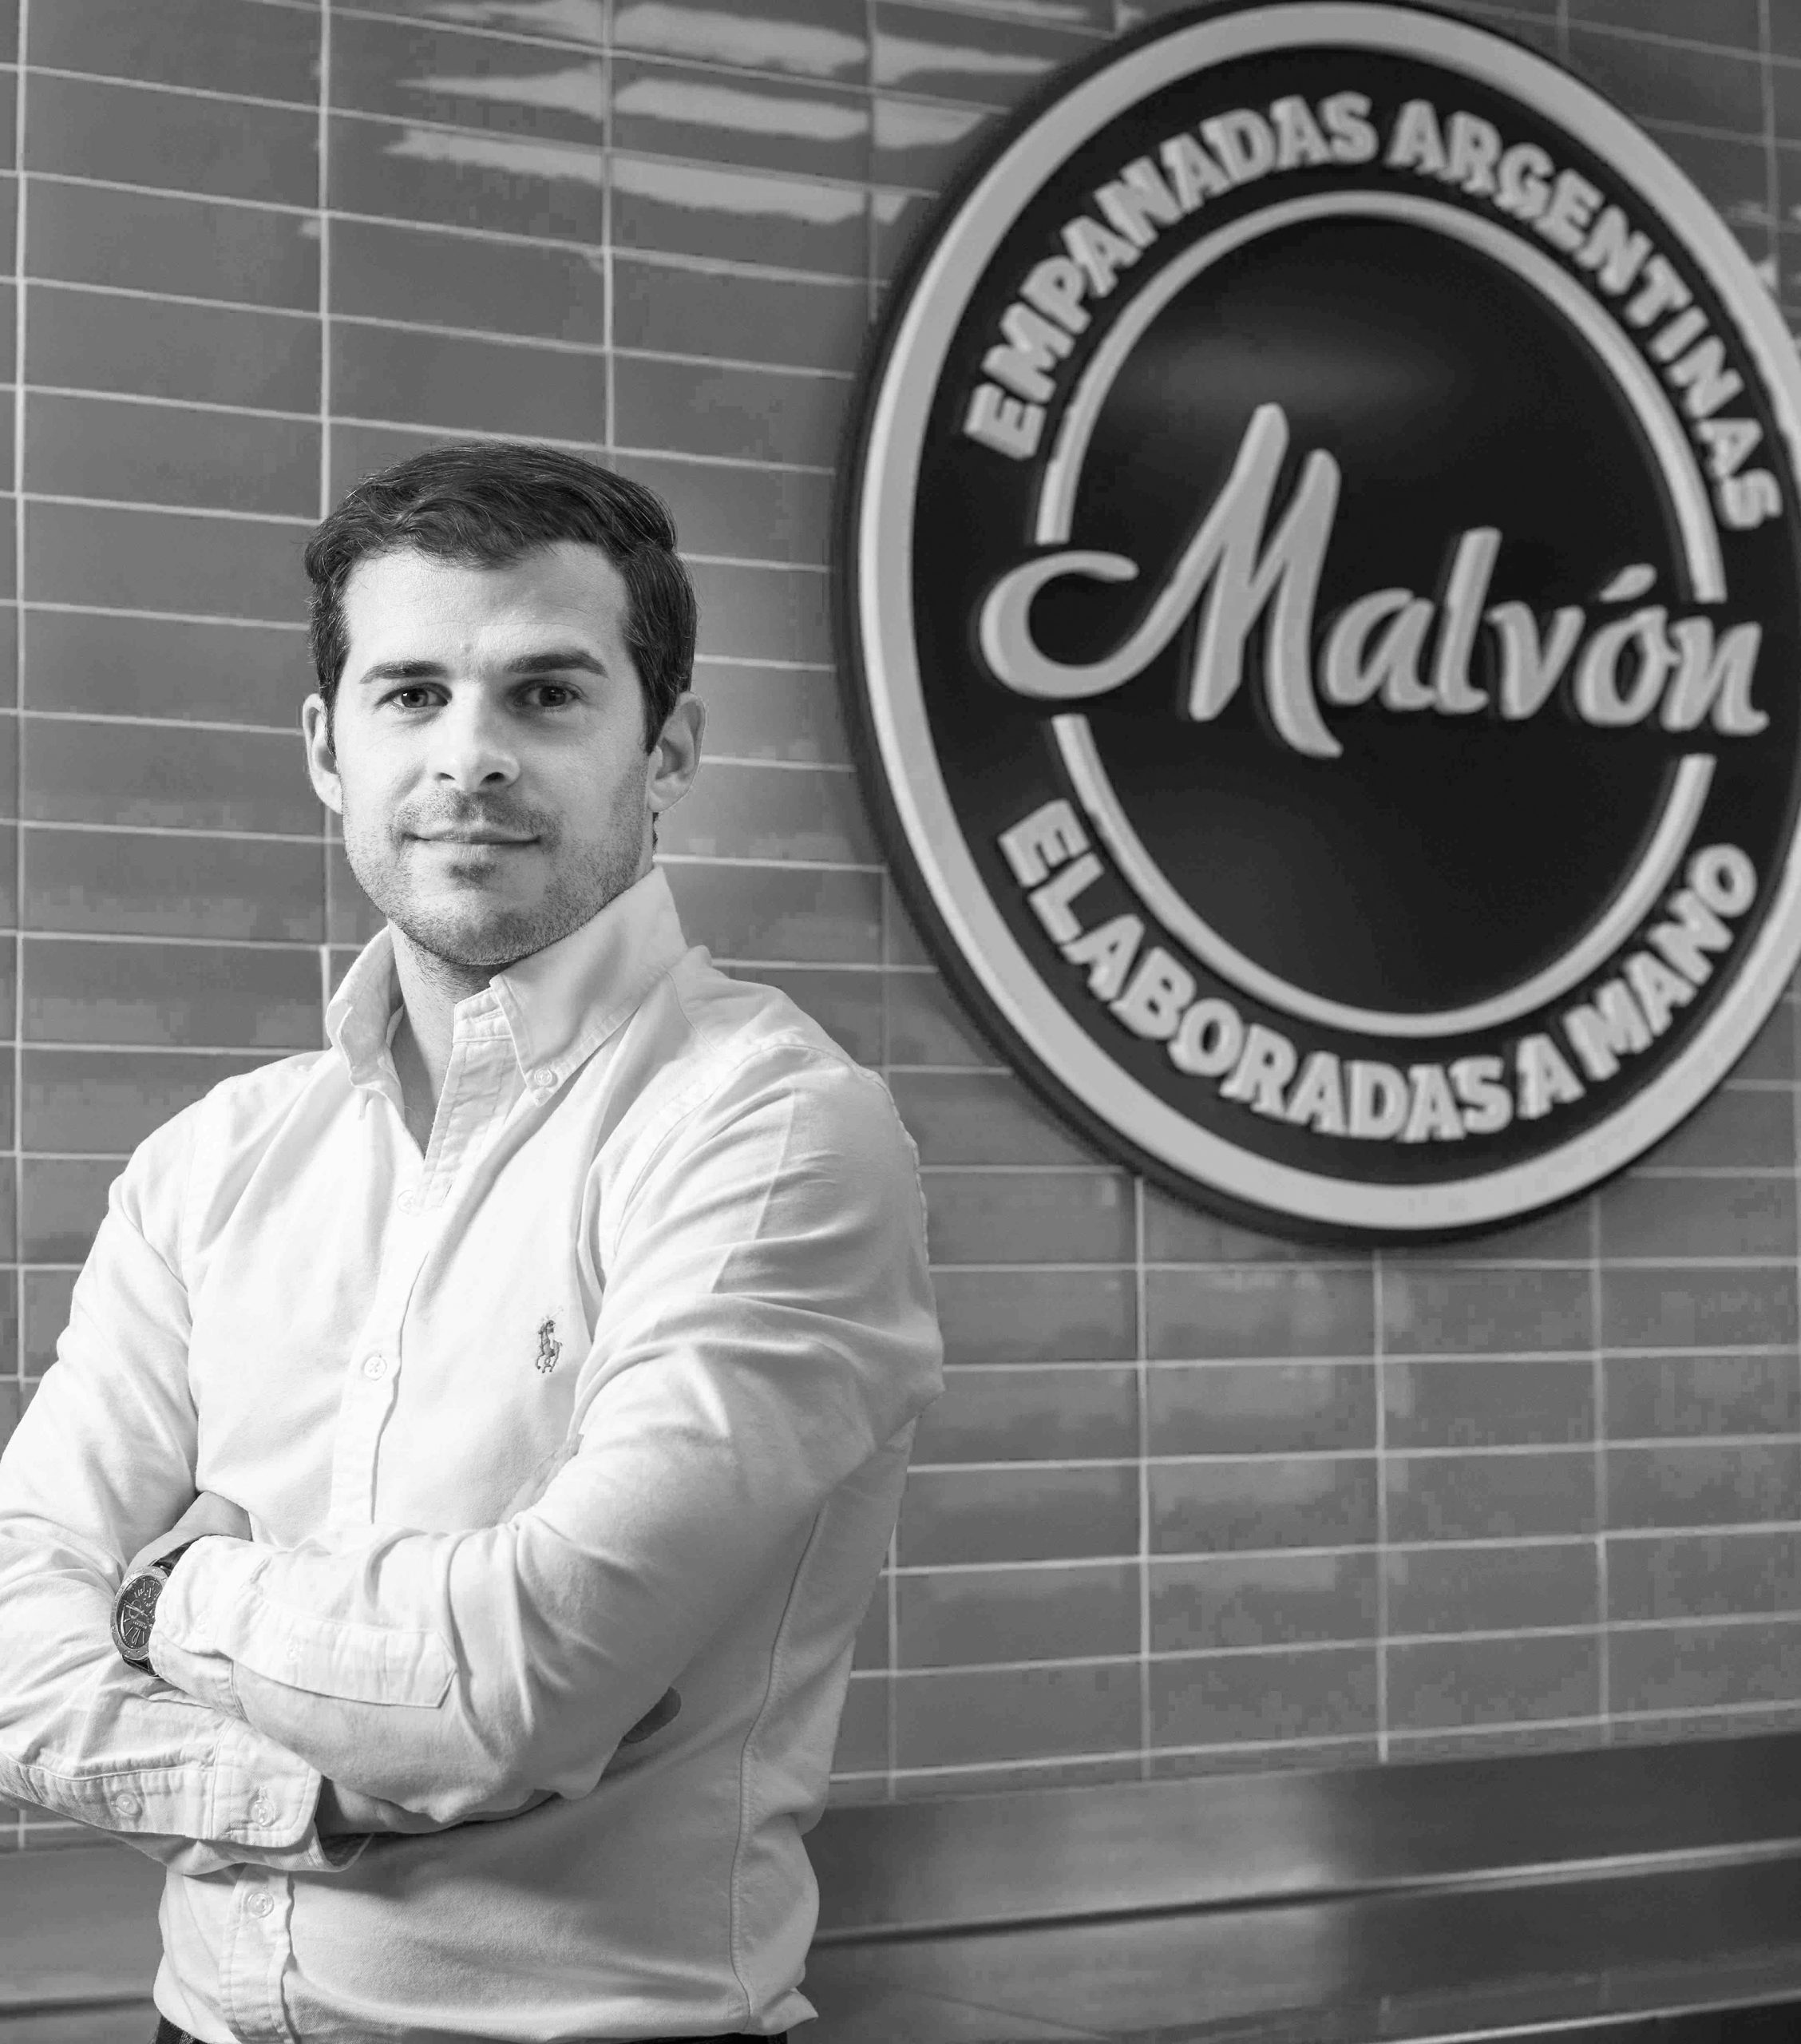 Entrevista a Alejandro Polo de Malvón empanadas